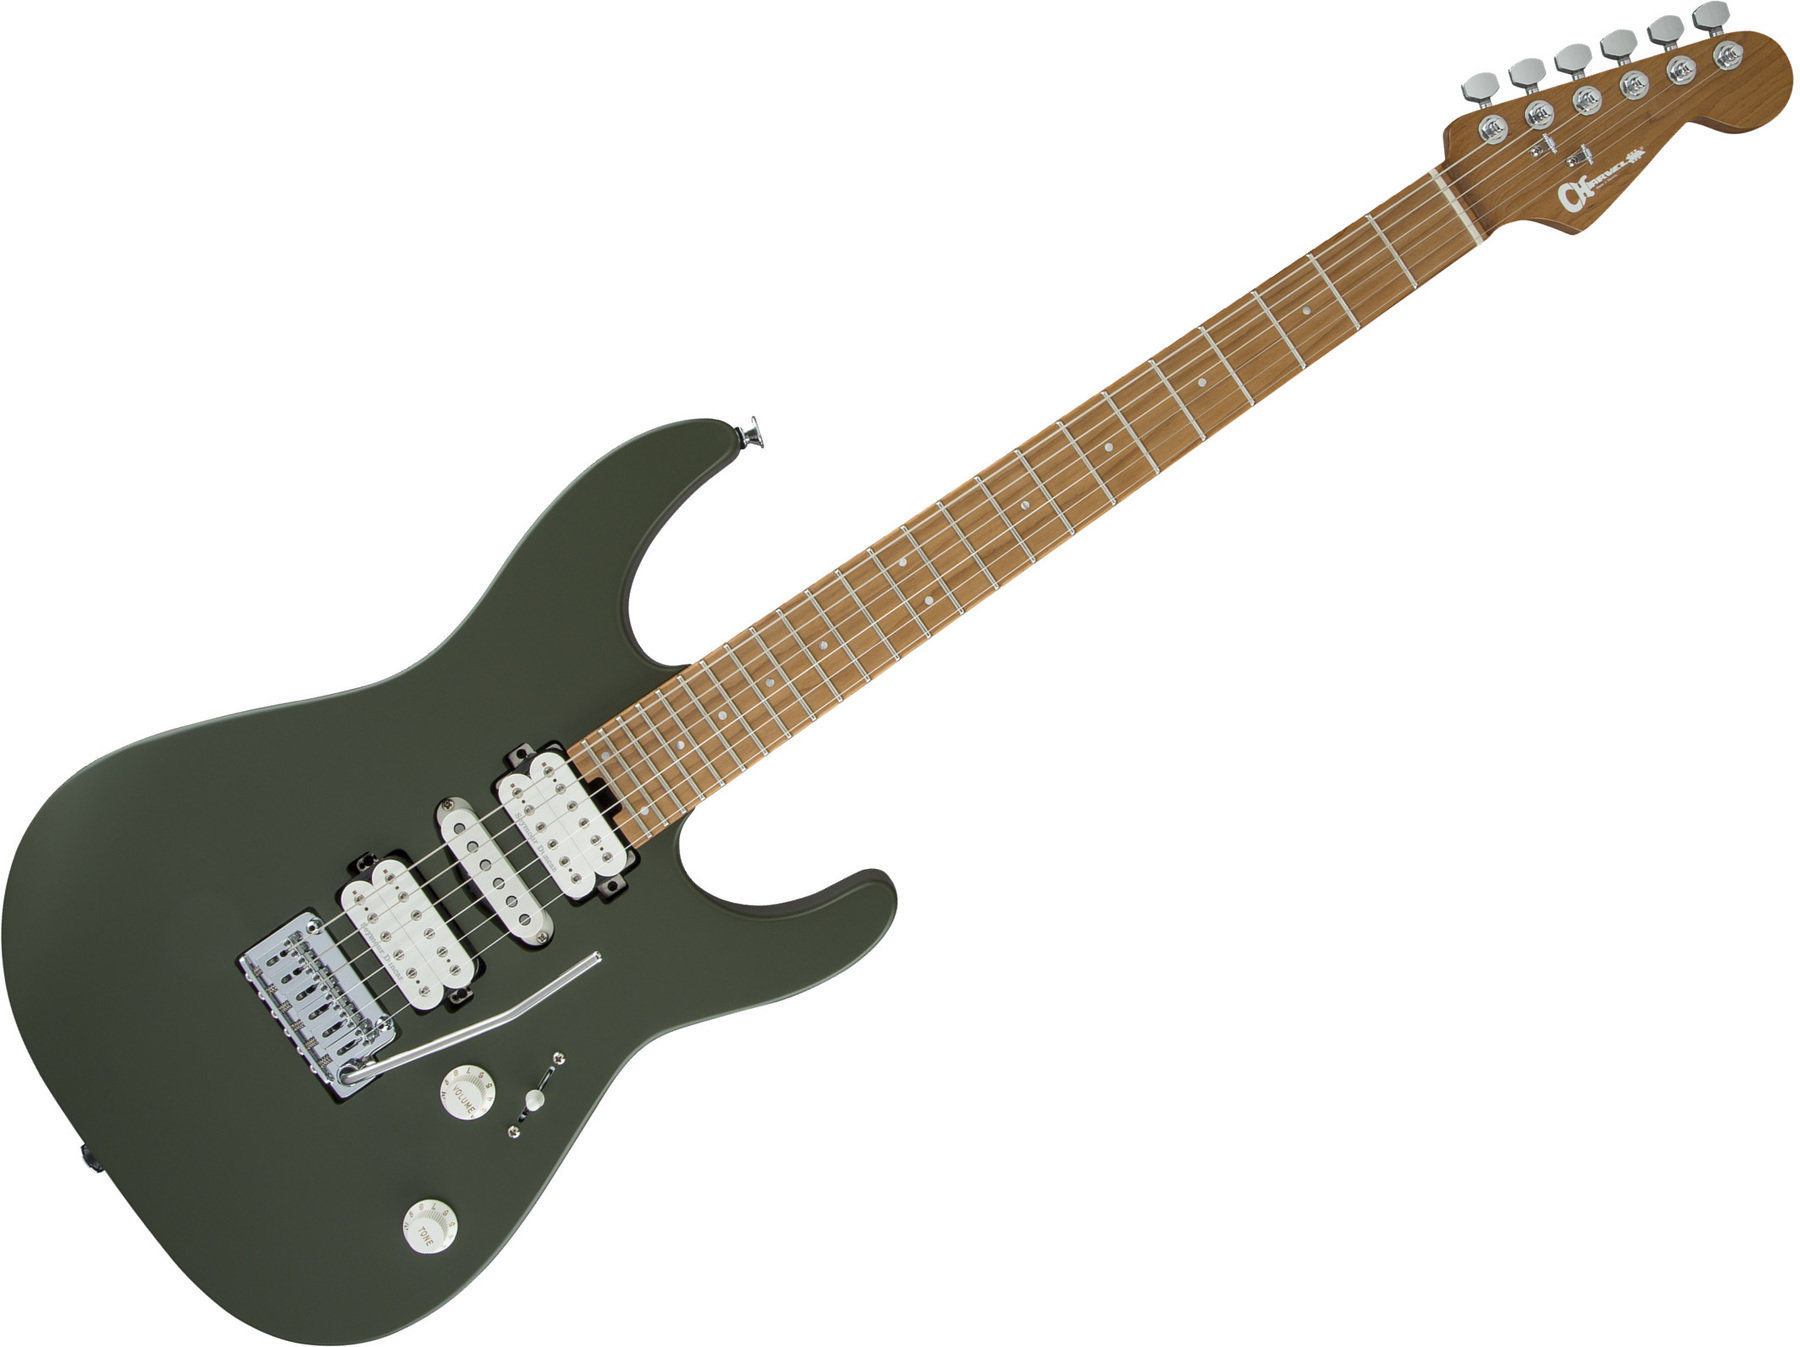 E-Gitarre Charvel Pro-Mod DK24 HSH 2PT CM Matte Army Drab